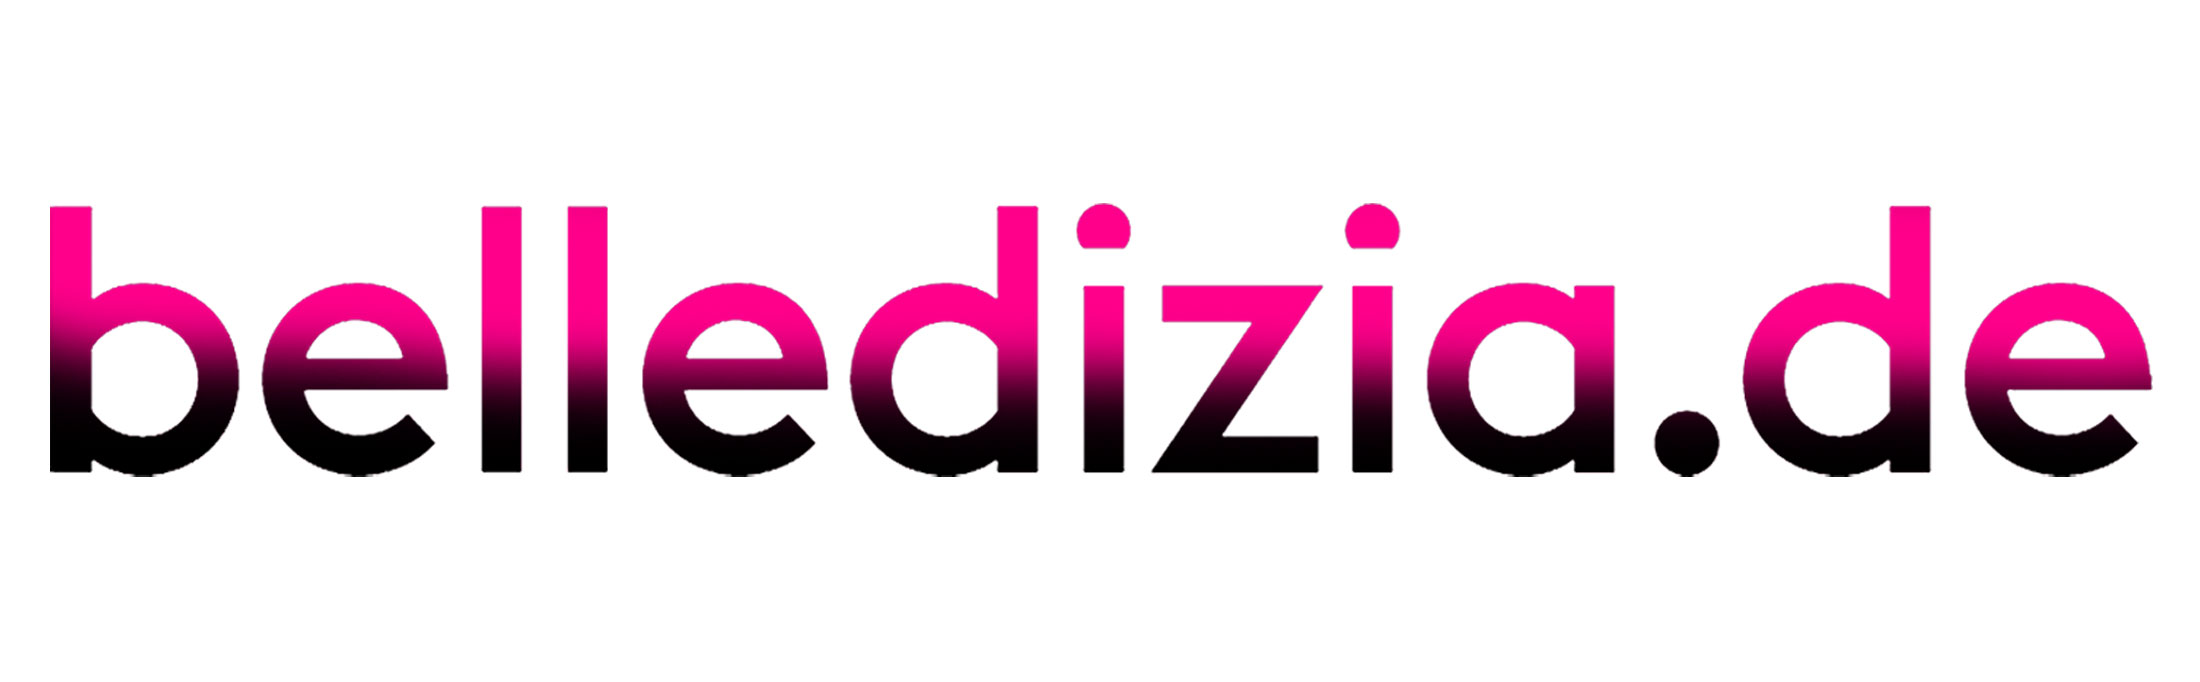 Belledizia.de-Logo